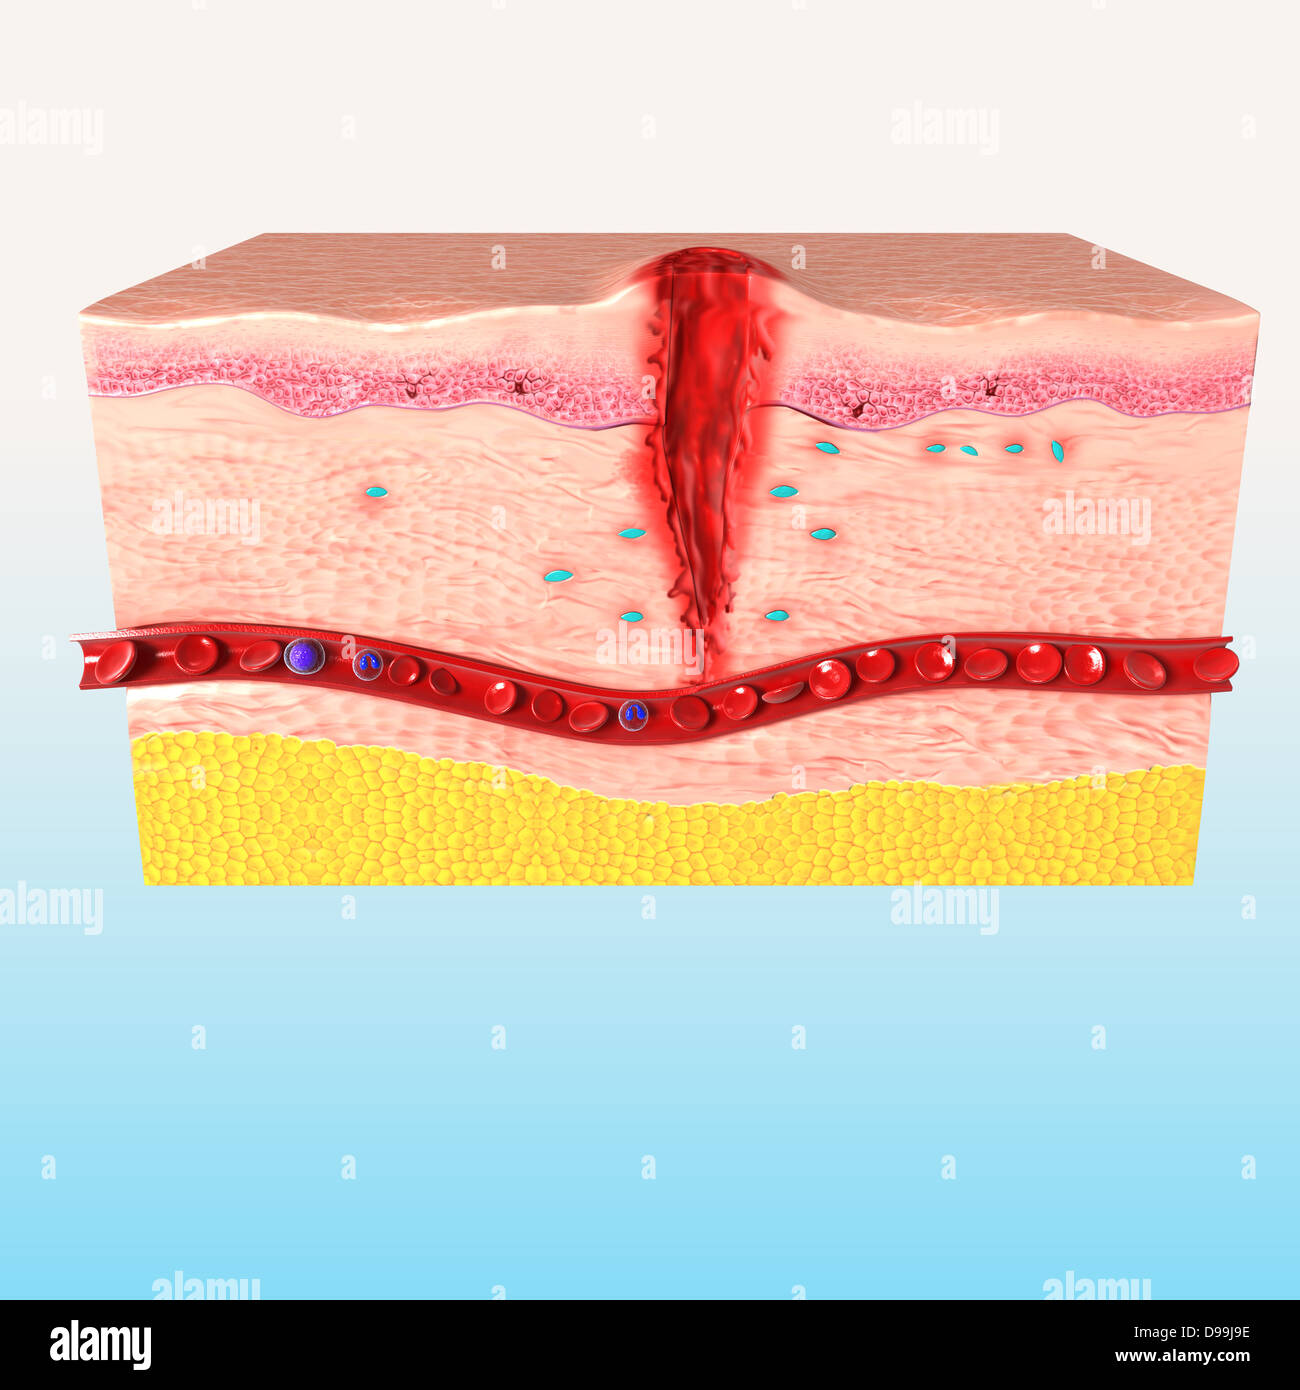 Anatomie de la réparation des tissus de la peau humaine Banque D'Images